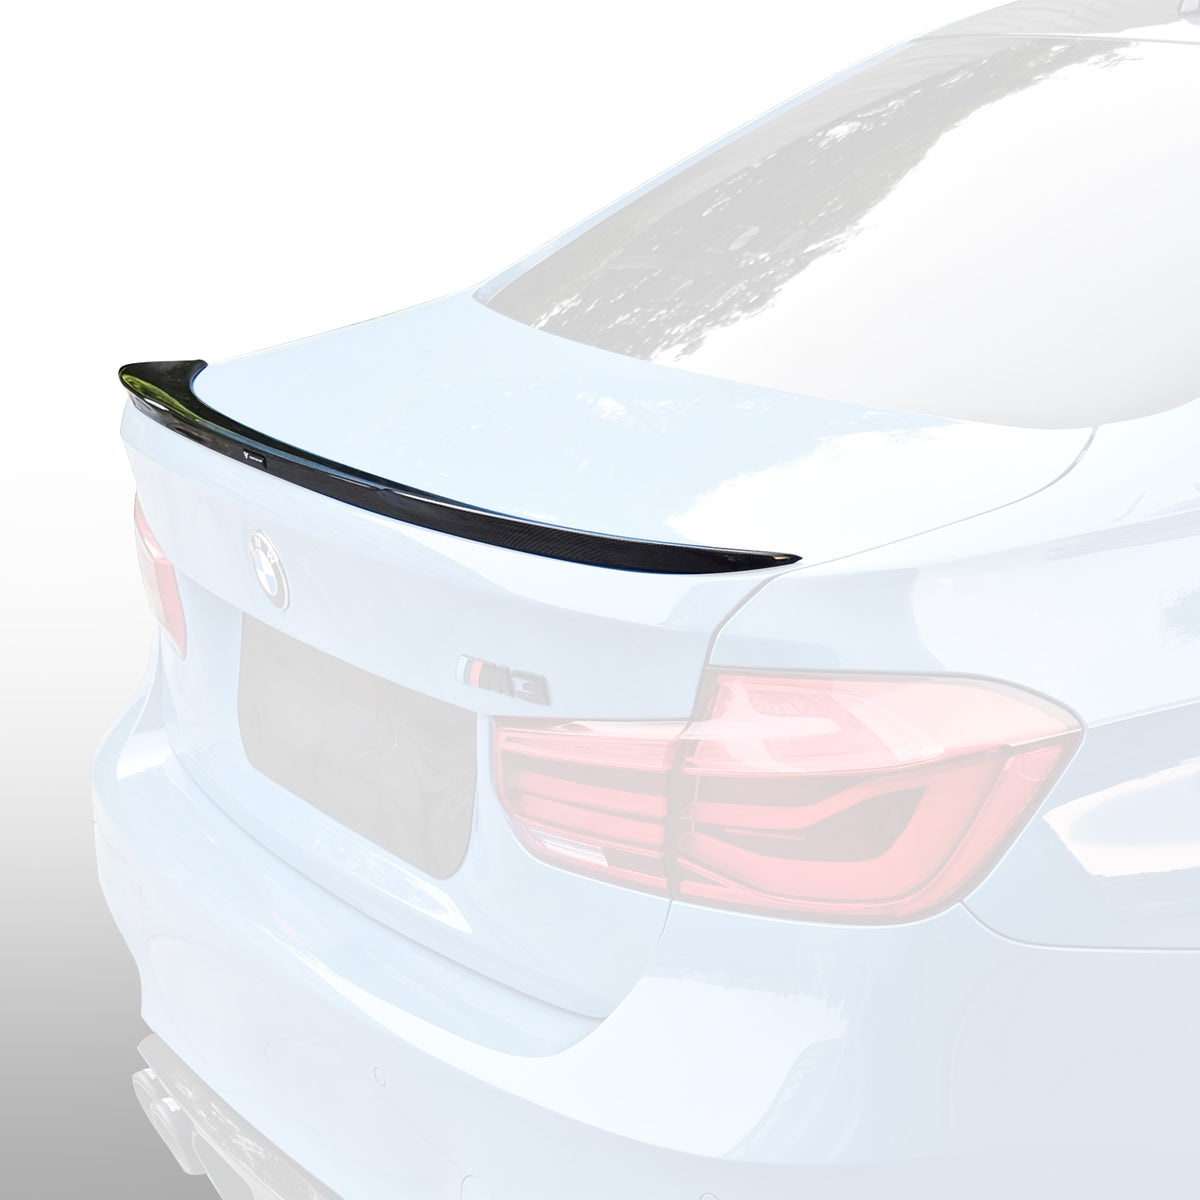 BMW F8X M3 EVO Aero Decklid Spoiler Carbon Fiber (F80 M3 Only) - Vorsteiner Wheels  - Aero - [tags]